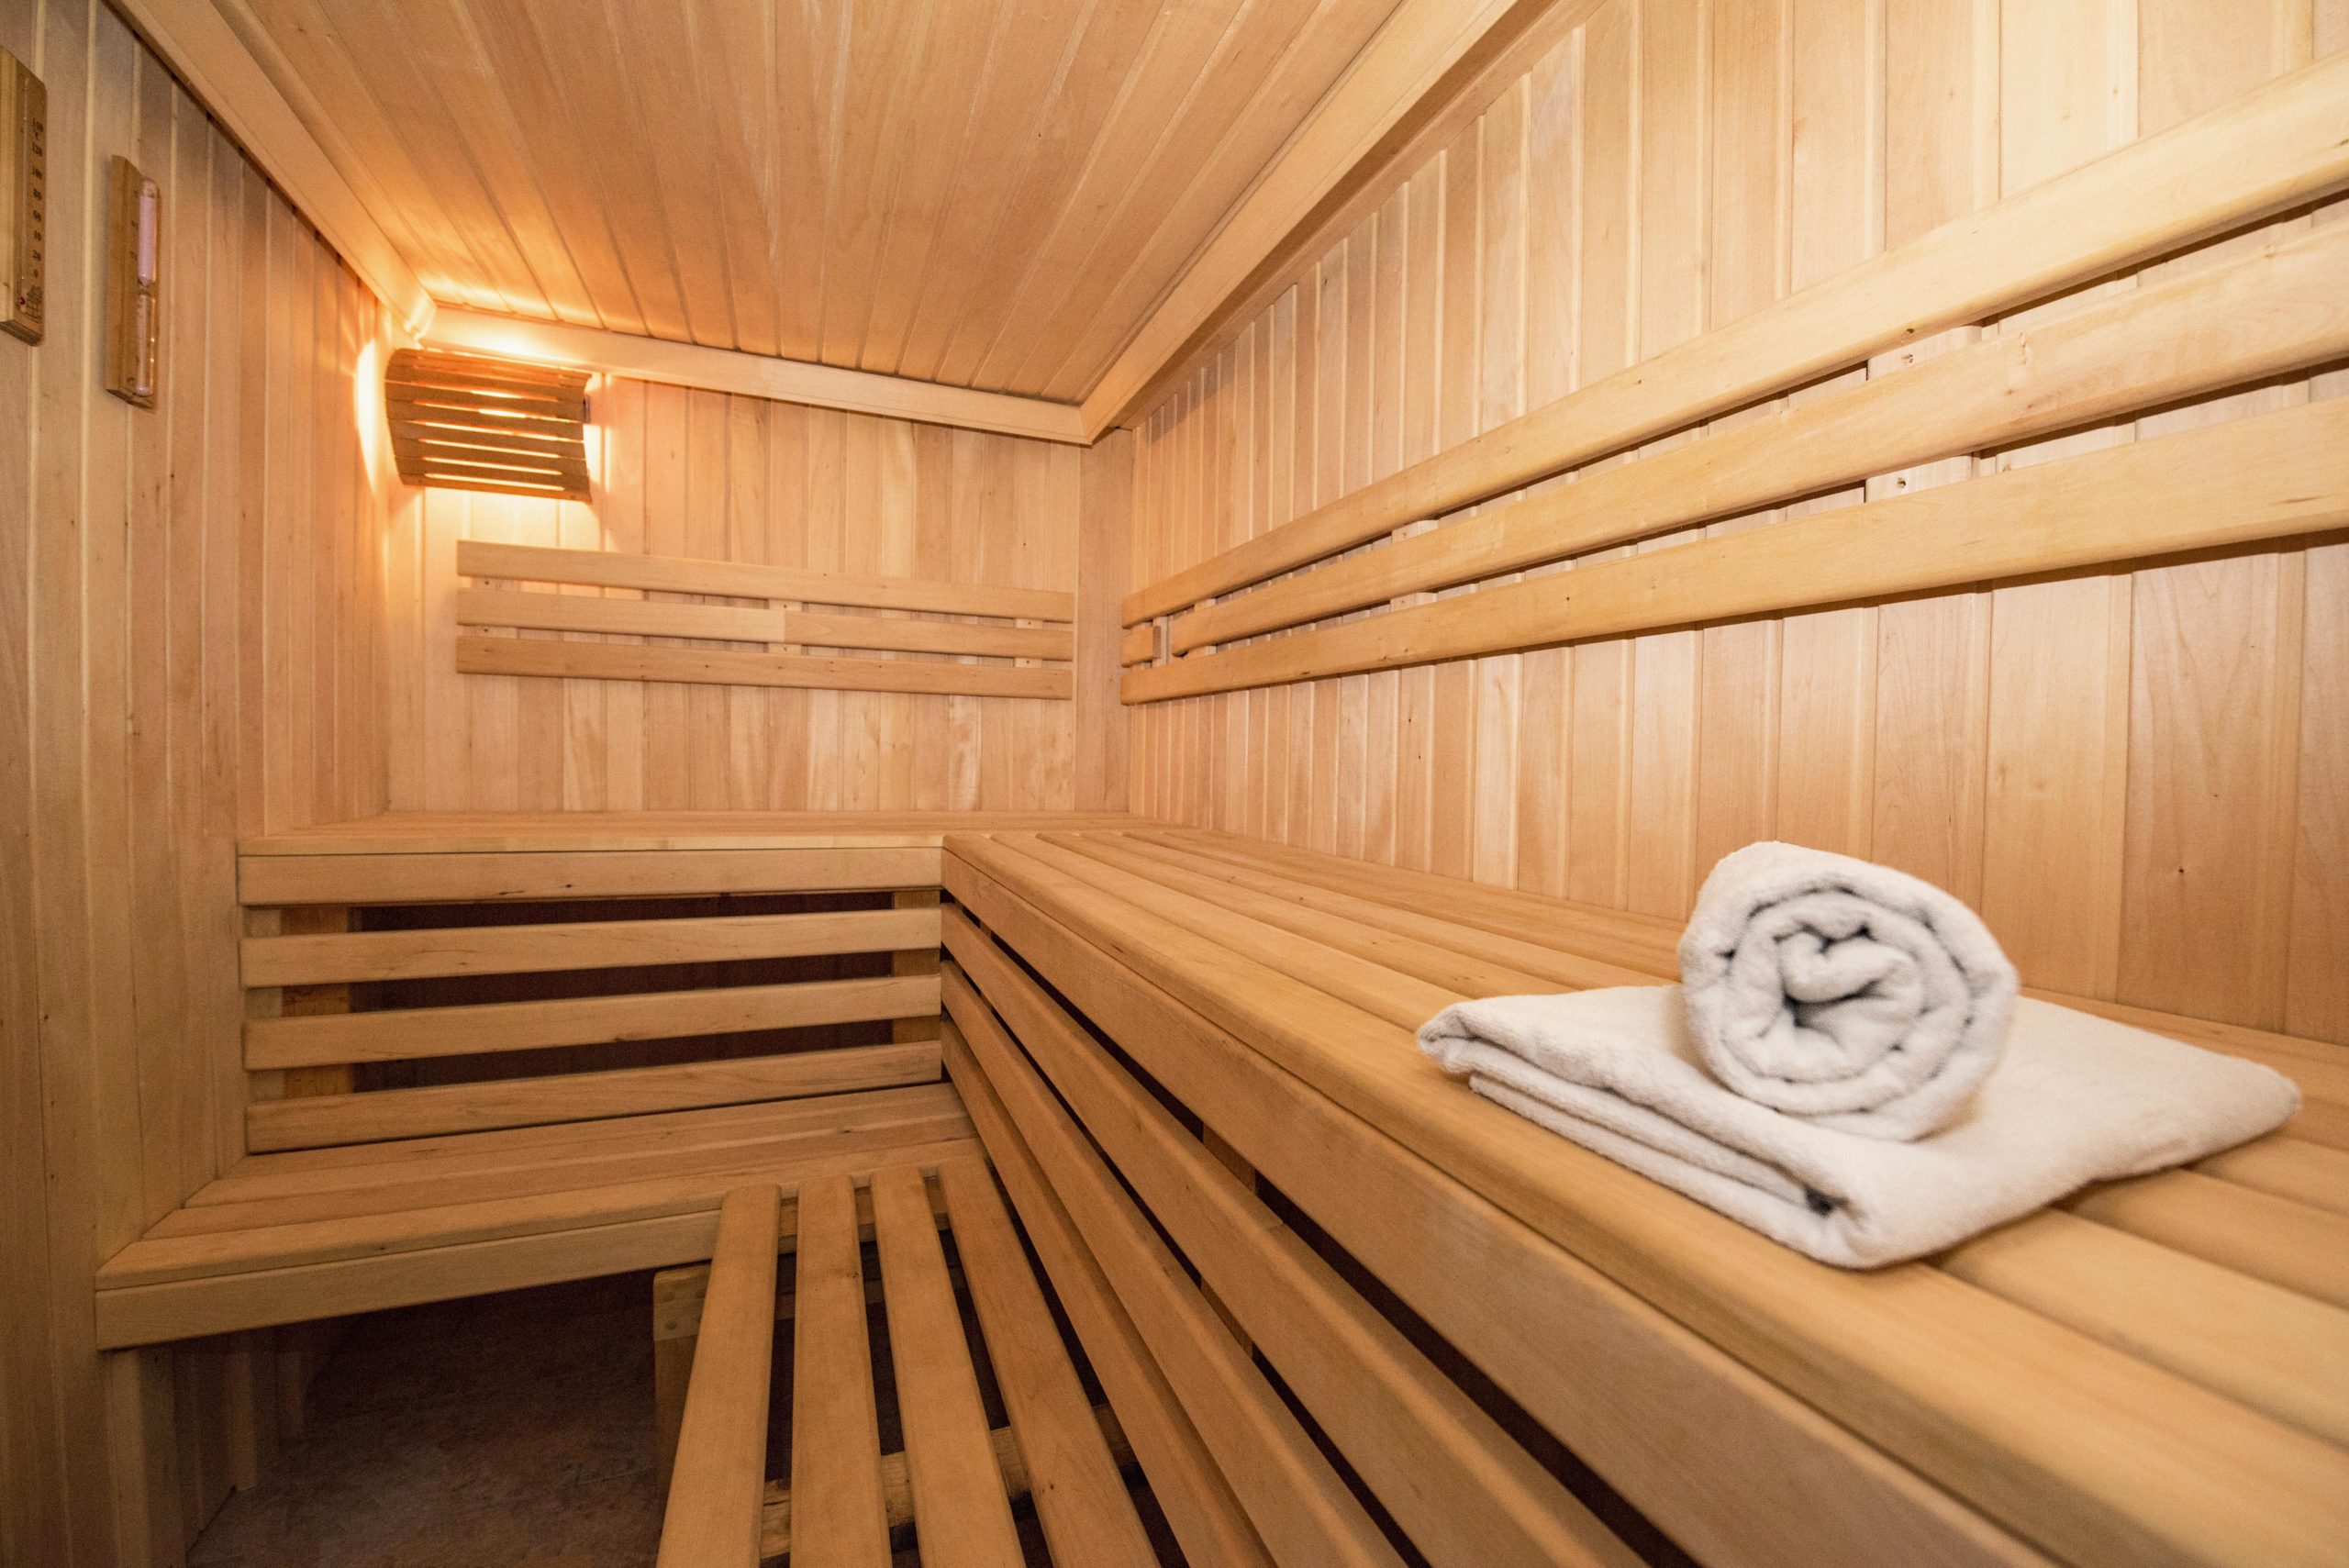 Paulownia drewno stosowanie w saunie Paulownia Holz im Saunabereich Paulownia wood for use in Saunas